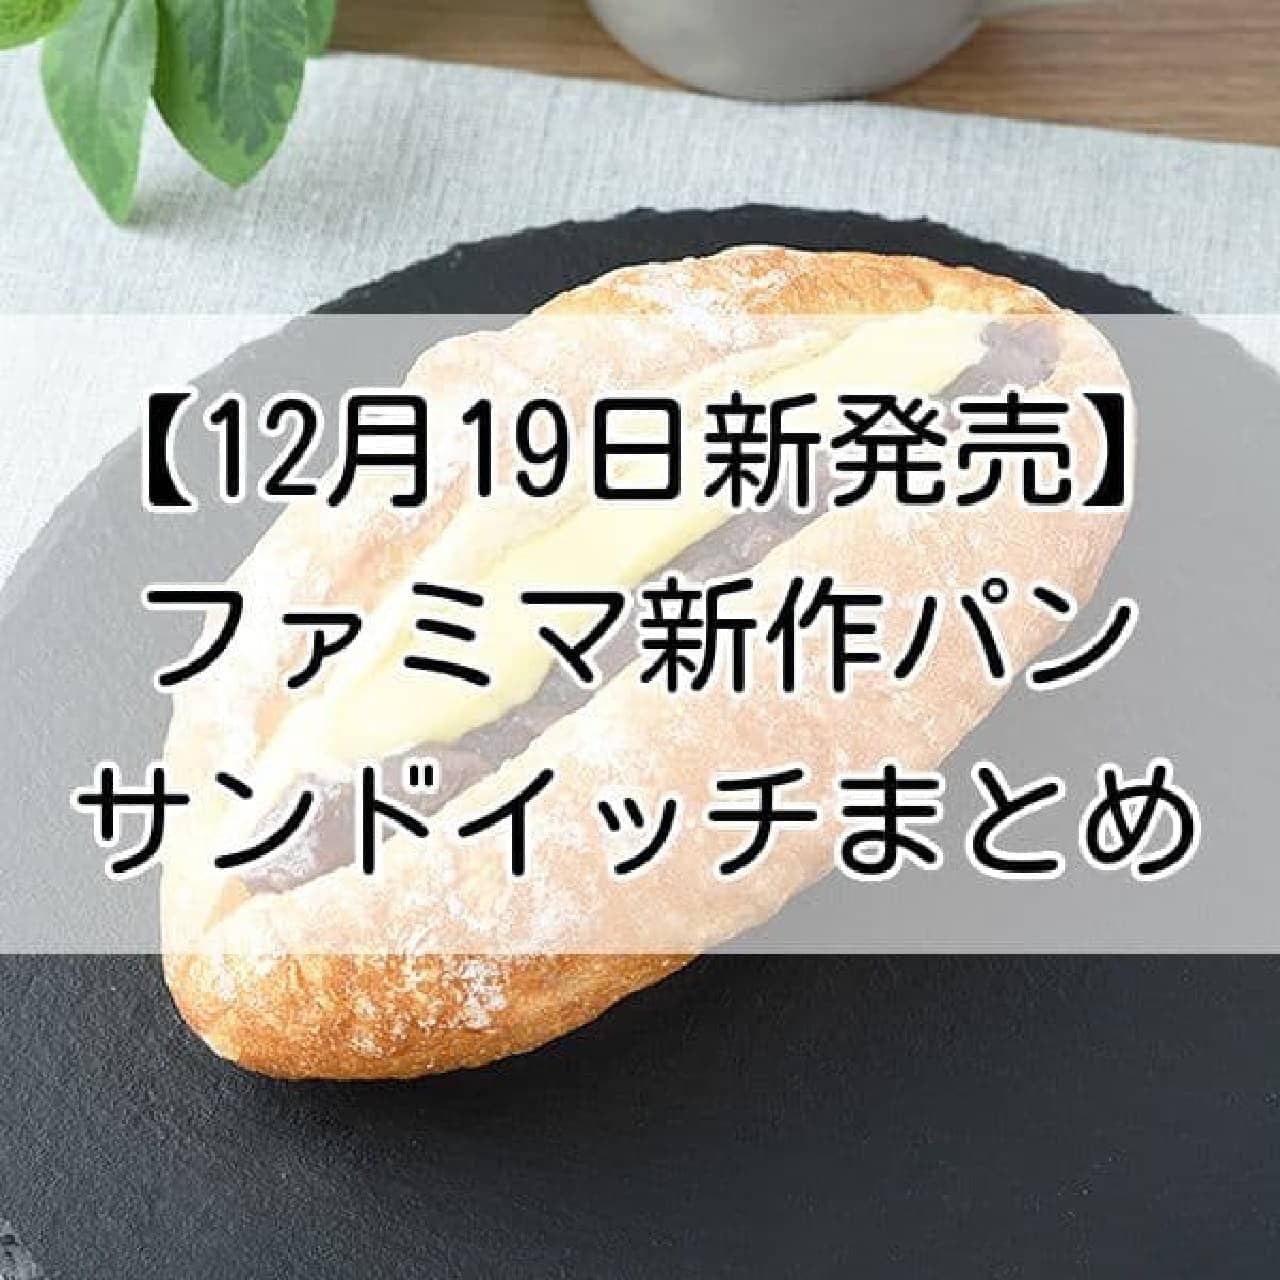 【12月19日新発売】ファミマ 新作パン・サンドイッチまとめ